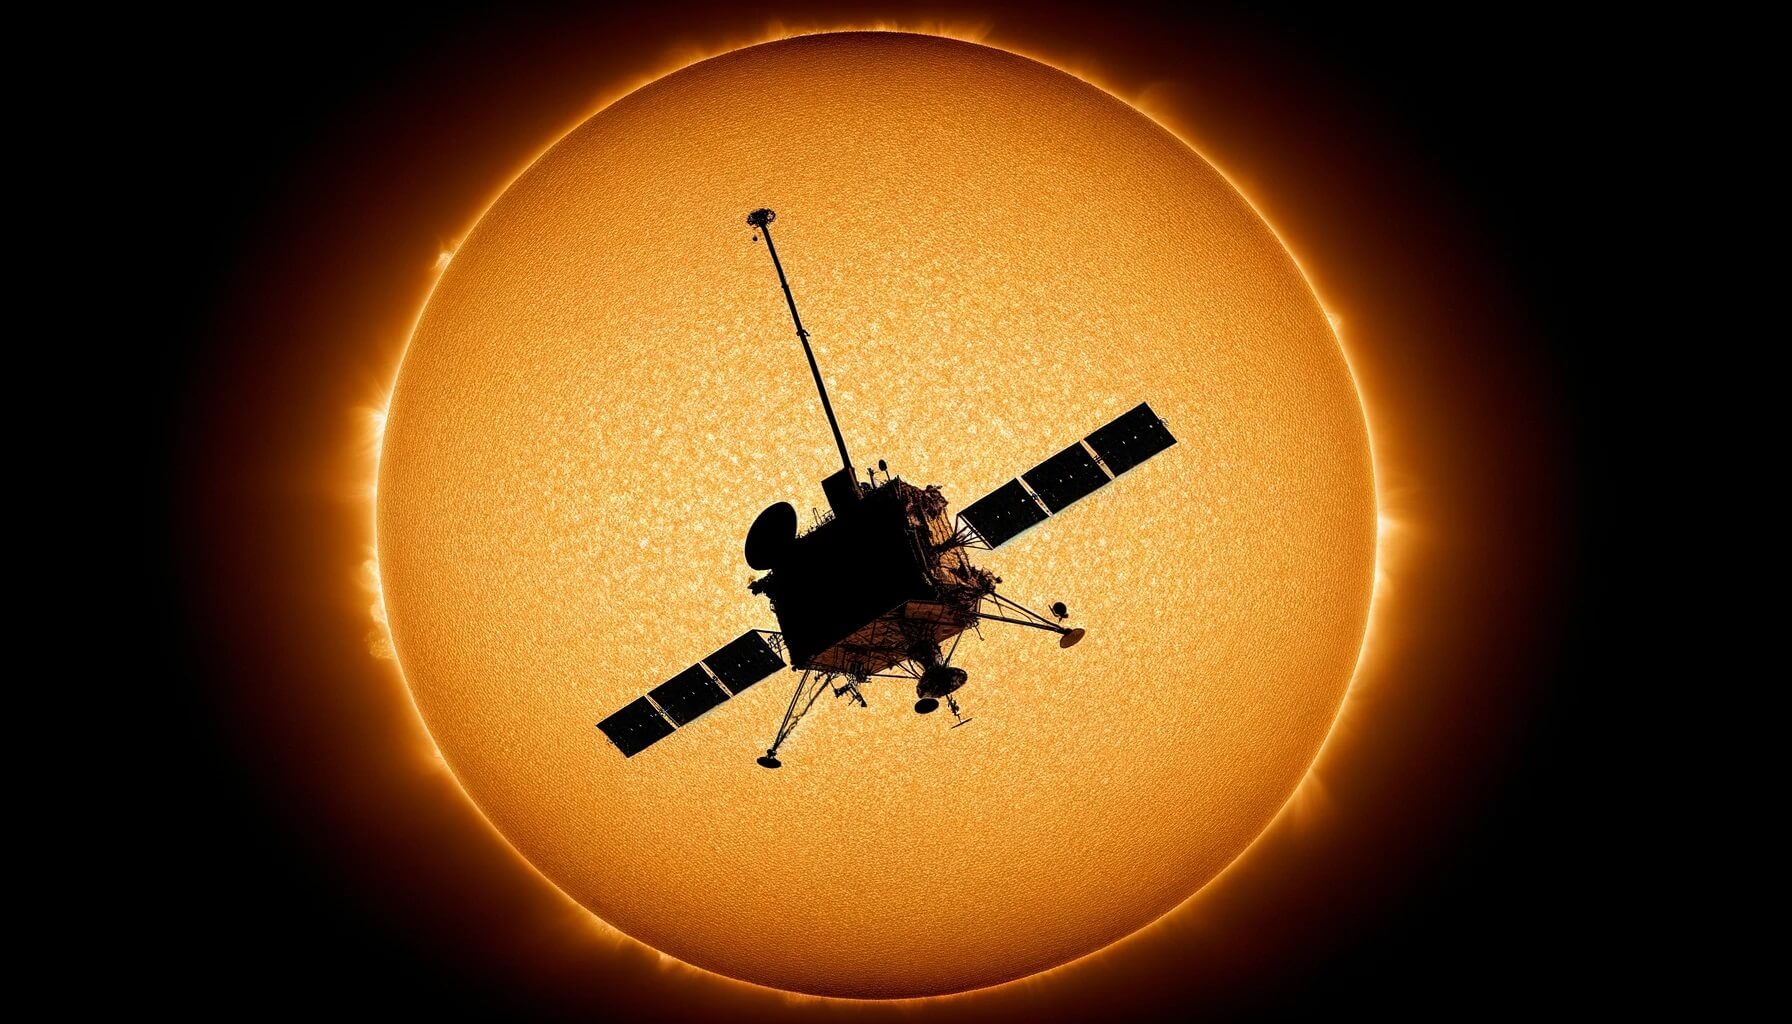 В 2024 году аппарат NASA «почти» совершит посадку на Солнце — это будет эпохальное событие. В 2024 году солнечный зонд «Паркер» приблизится к Солнцу на по-настоящему рекордное расстояние. Изображение: нейросеть DALL-E. Фото.